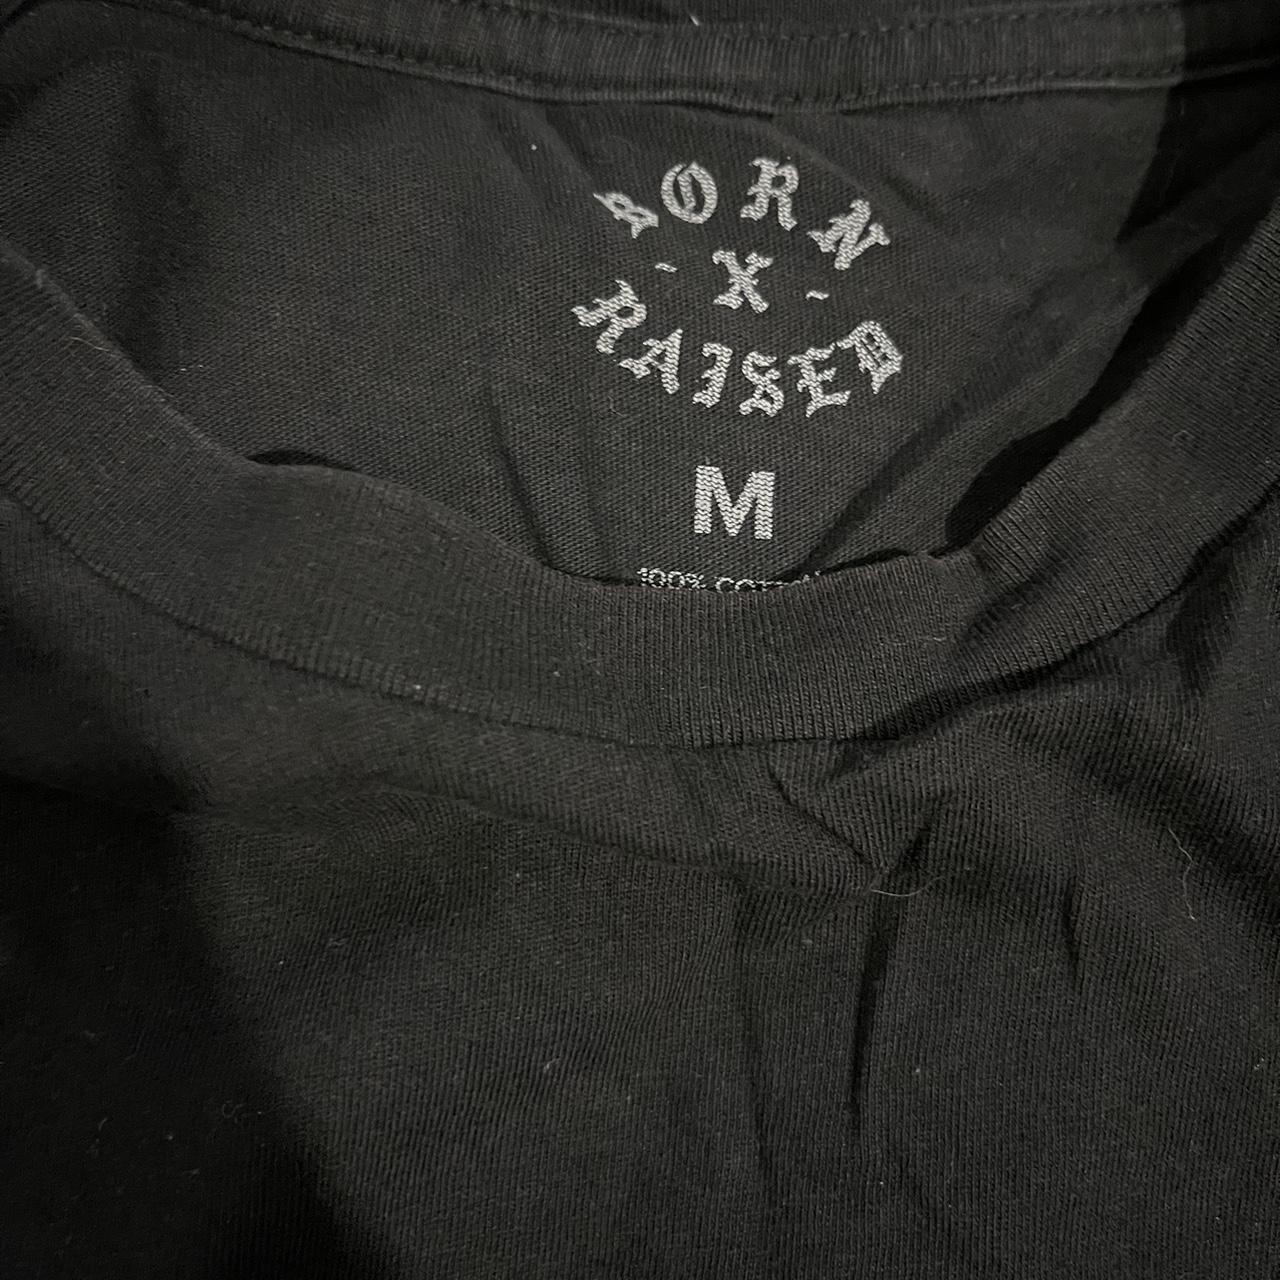 Born x Raised Men's Black T-shirt (3)